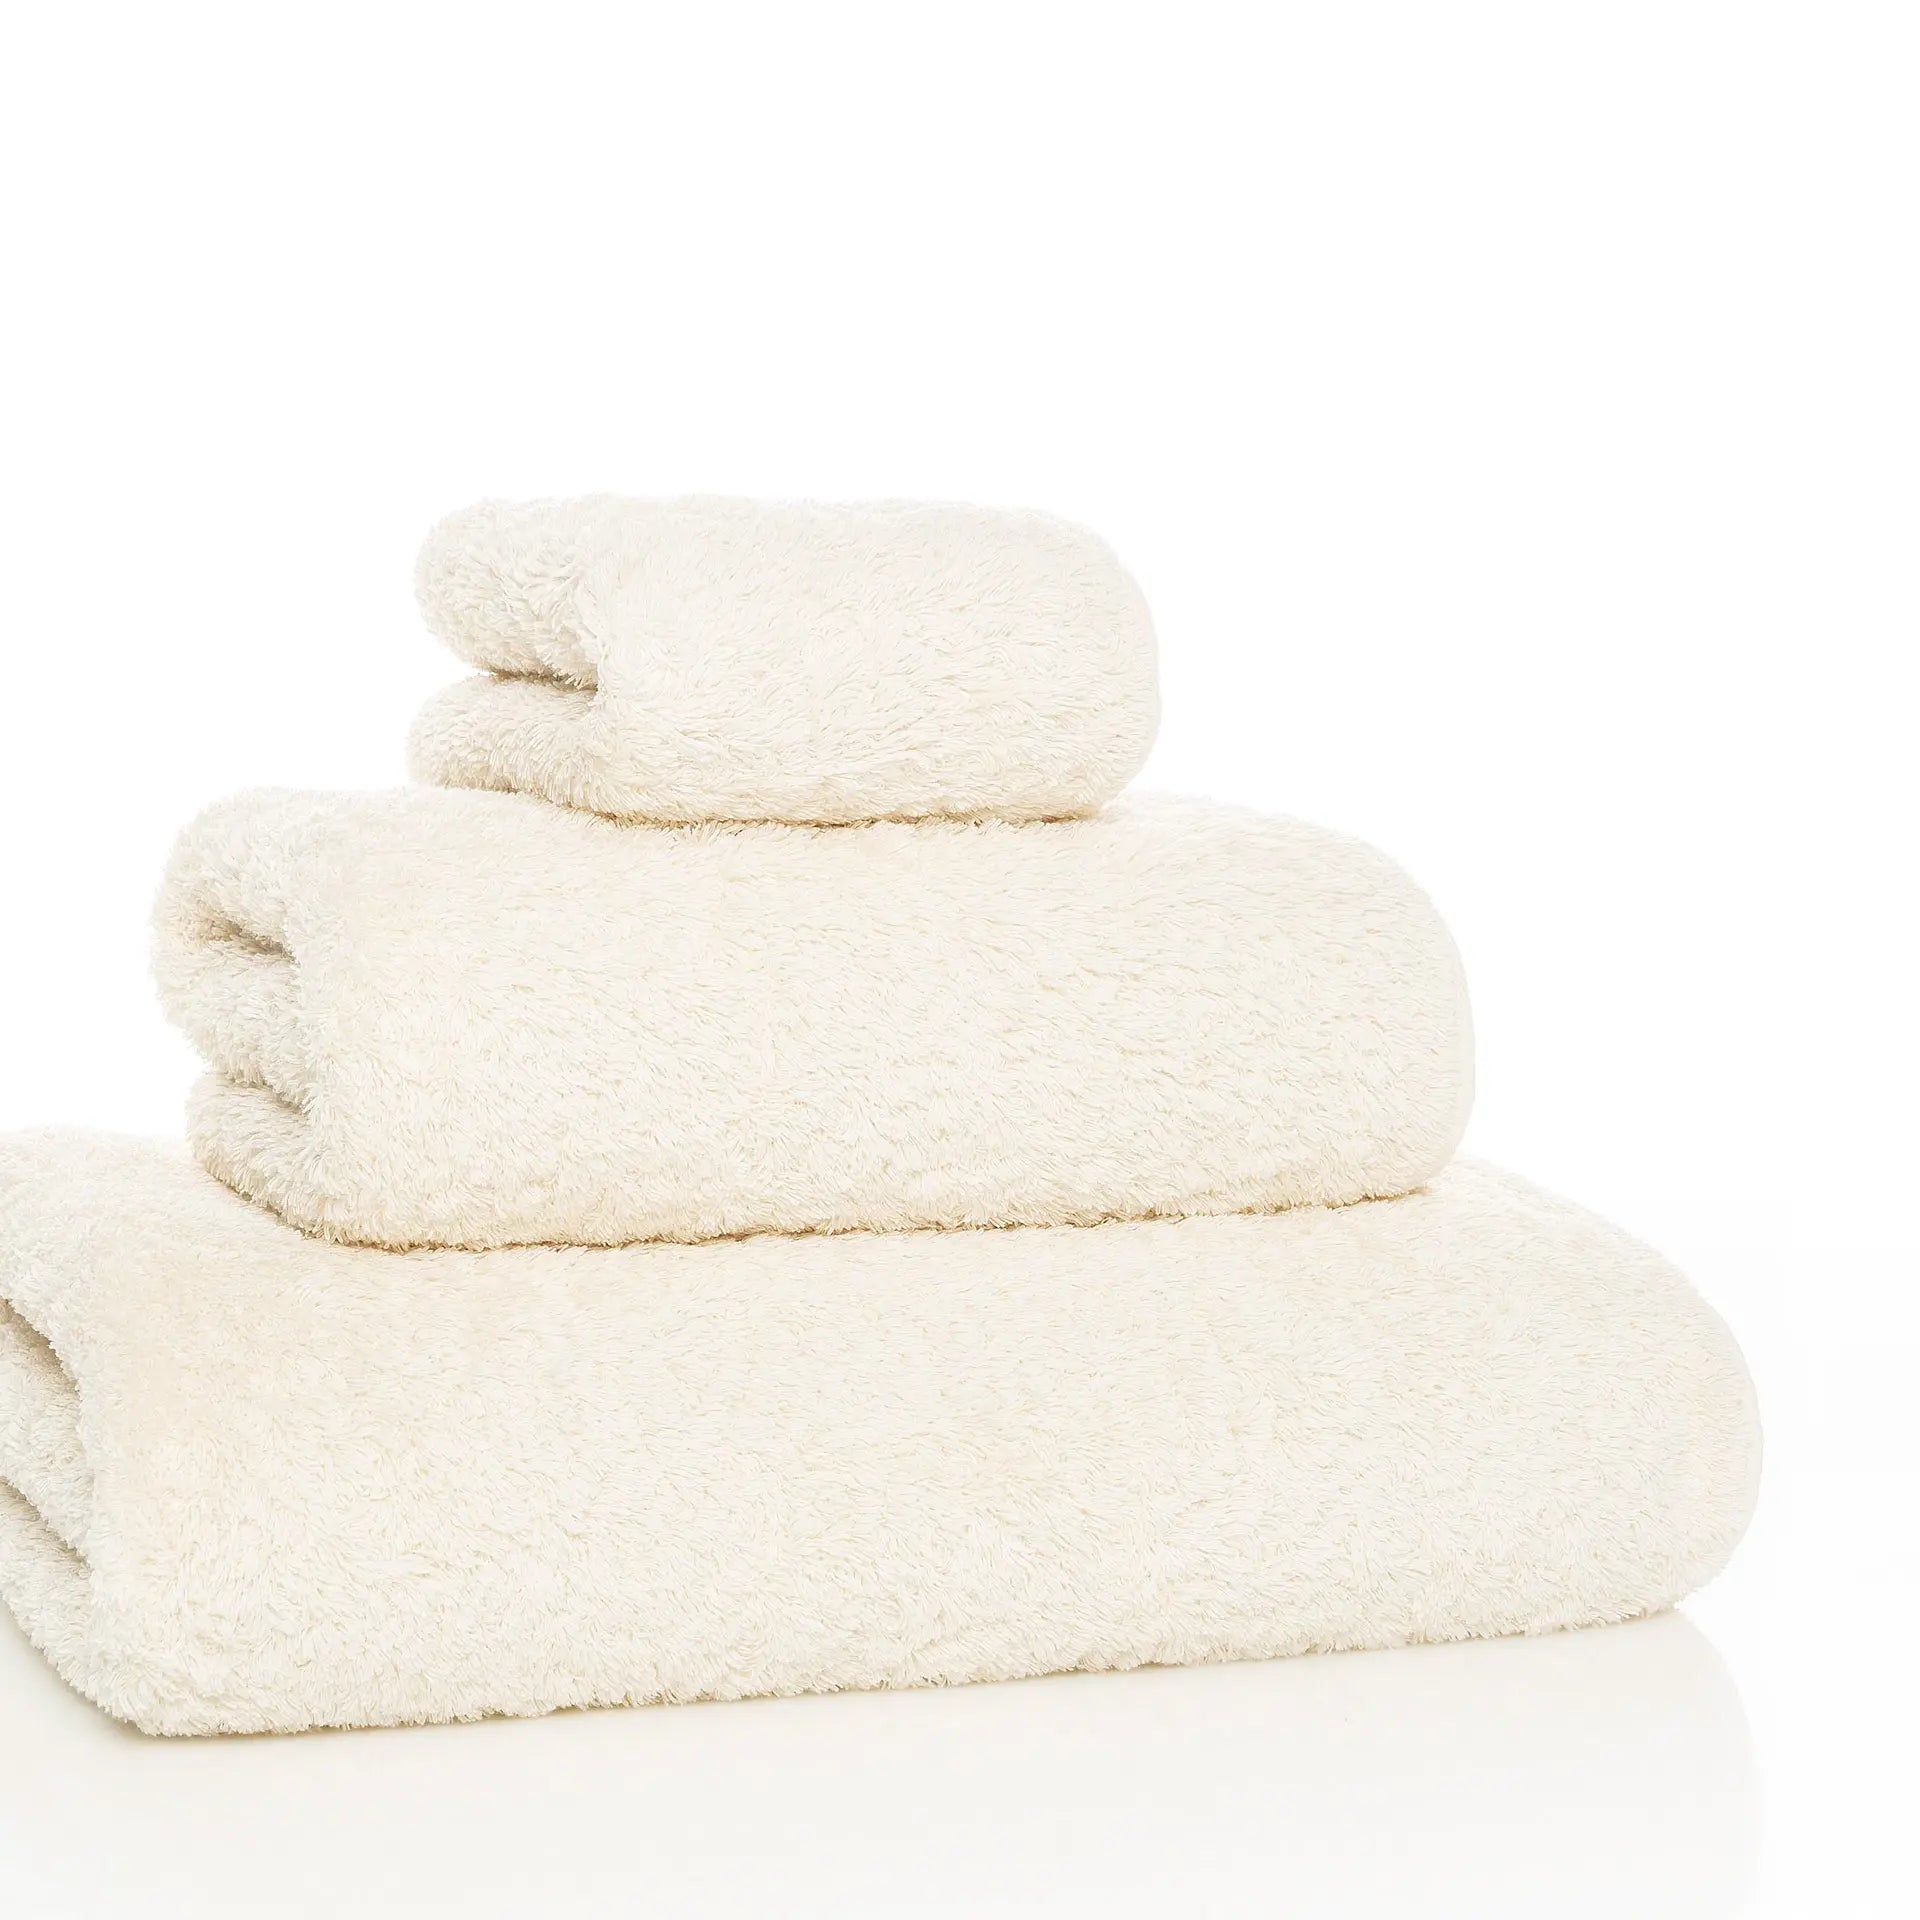  Graccioza  Egoist Towels Natural 